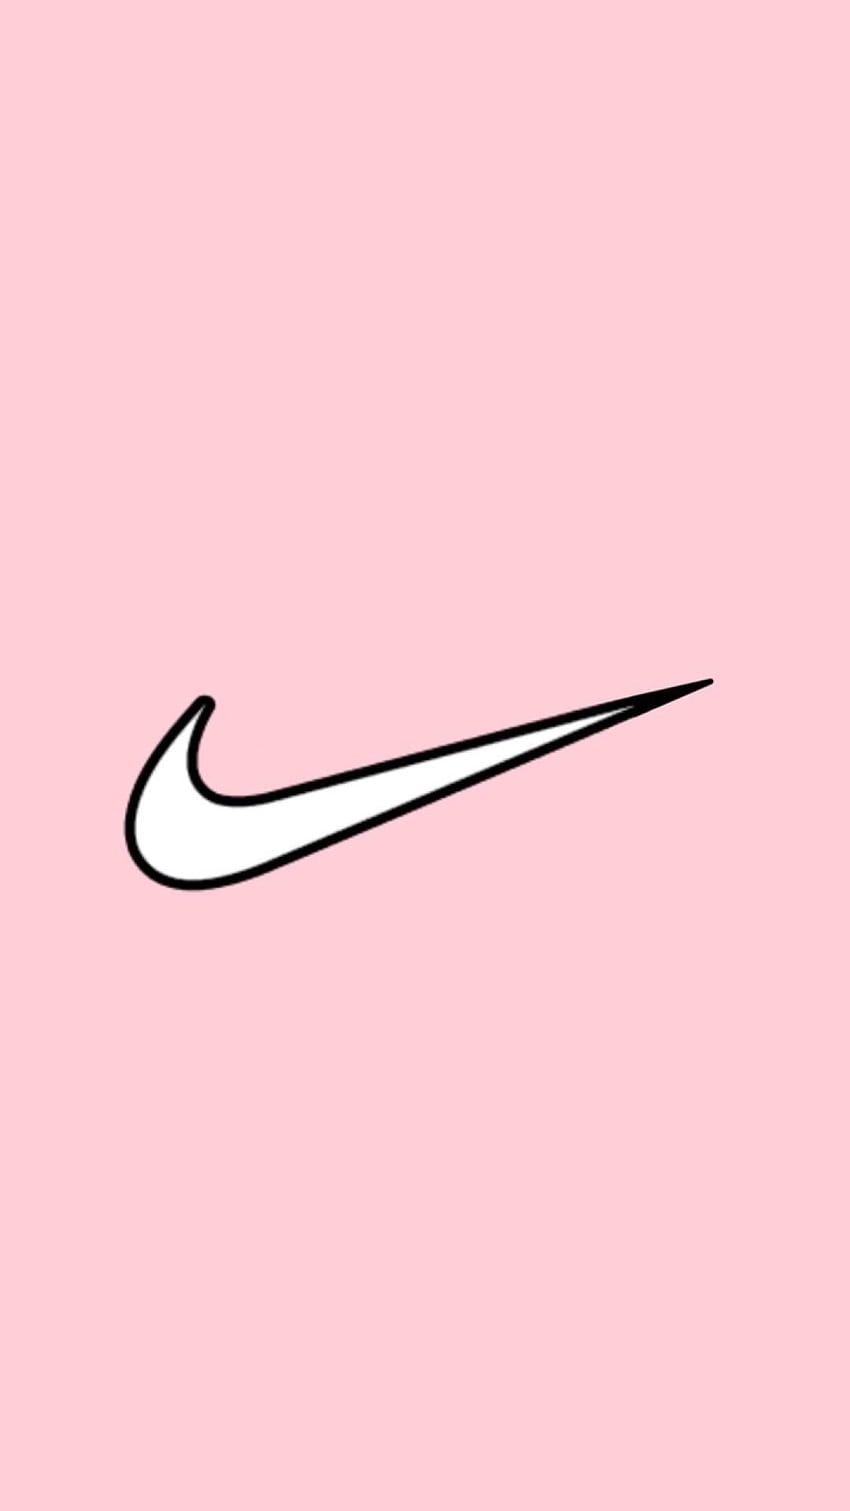 Những tông màu hồng pastel trên nền đen của hình nền Nike sẽ mang lại cho bạn một cảm giác rất sang trọng và hiện đại. Hãy cùng khám phá hình ảnh này để thấy rõ sự kết hợp hoàn hảo giữa phong cách thể thao và thời trang đang được ưa chuộng hiện nay.